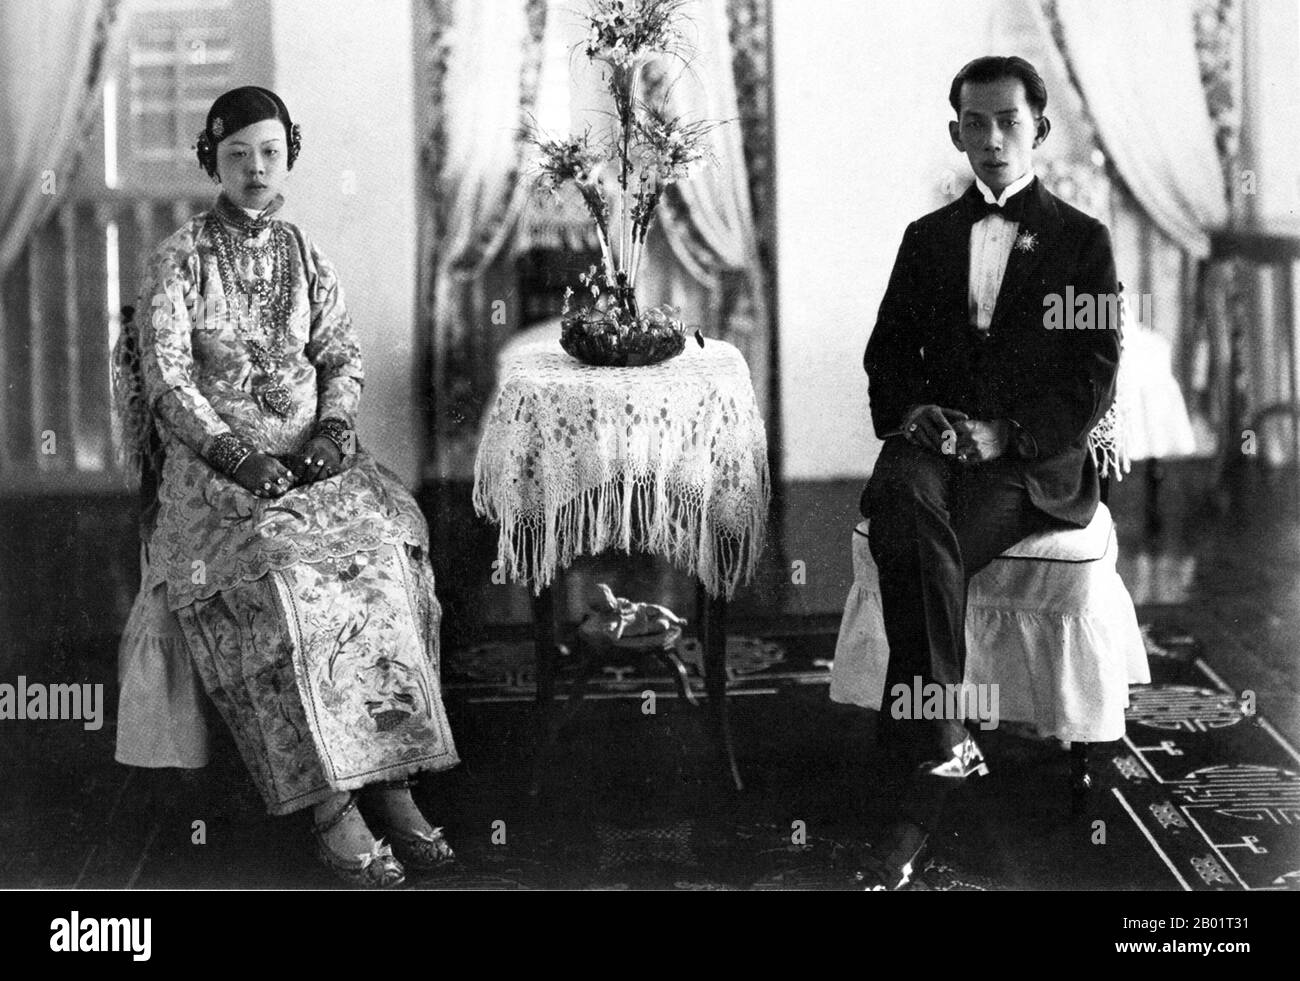 Malaysia/Singapur: Eine Peranakan Braut und Bräutigam in ihrer Brautkammer, Penang, um 1920. Peranakan Chinese und Baba-Nyonya sind die Bezeichnungen für die Nachkommen chinesischer Einwanderer aus dem späten 15. Und 16. Jahrhundert, die während der Kolonialzeit in den malaiisch-indonesischen Archipel von Nusantara kamen. Mitglieder dieser Gemeinde in Malaysia bezeichnen sich als „Nyonya-Baba“ oder „Baba-Nyonya“. Nyonya ist der Begriff für die Weibchen und Baba für die Männchen. Sie gilt insbesondere für die ethnischen chinesischen Bevölkerungsgruppen der British Straits Settlements in Malaya und der von den Niederlanden kontrollierten Insel Java und anderen Orten. Stockfoto